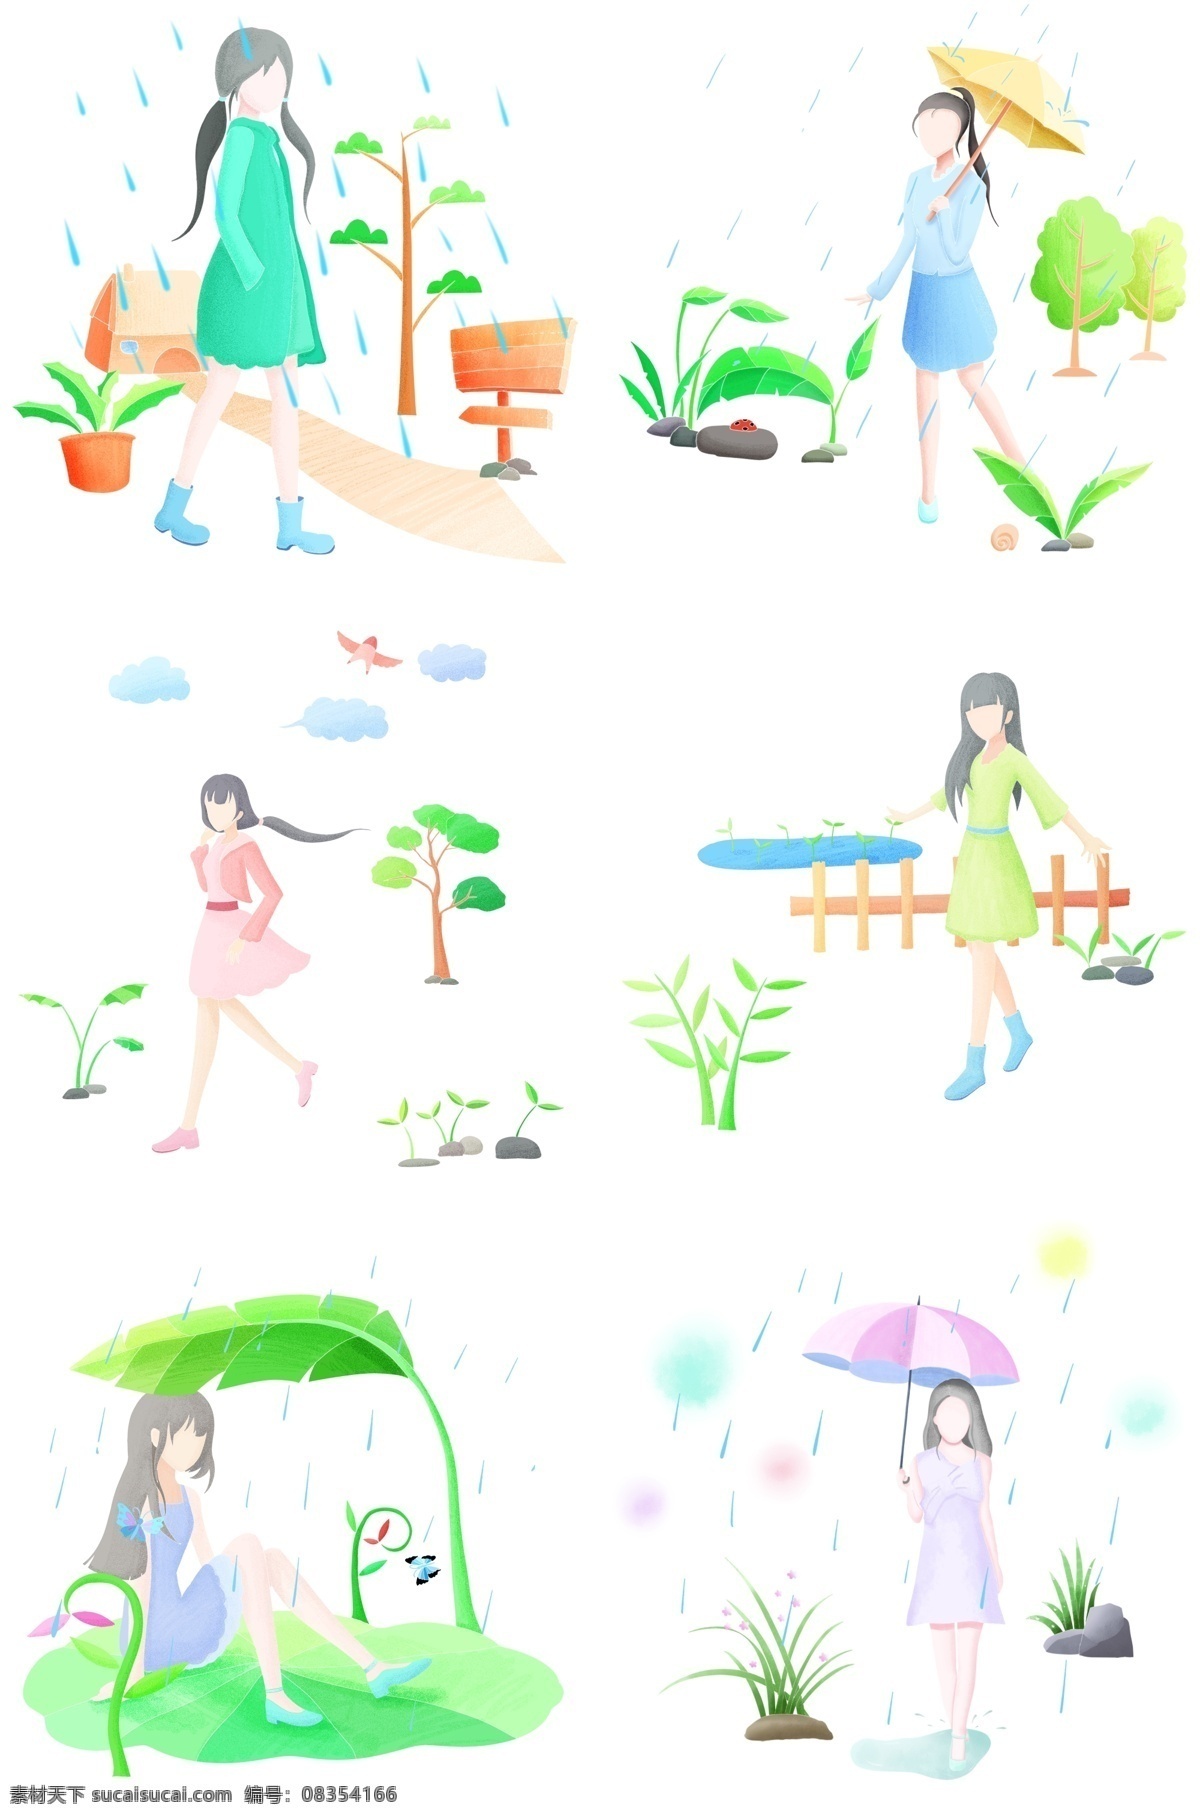 谷雨 人物 插画 合集 打伞的小女孩 粉色的雨伞 蓝色雨滴 云朵 太阳 绿色的花草 植物装饰